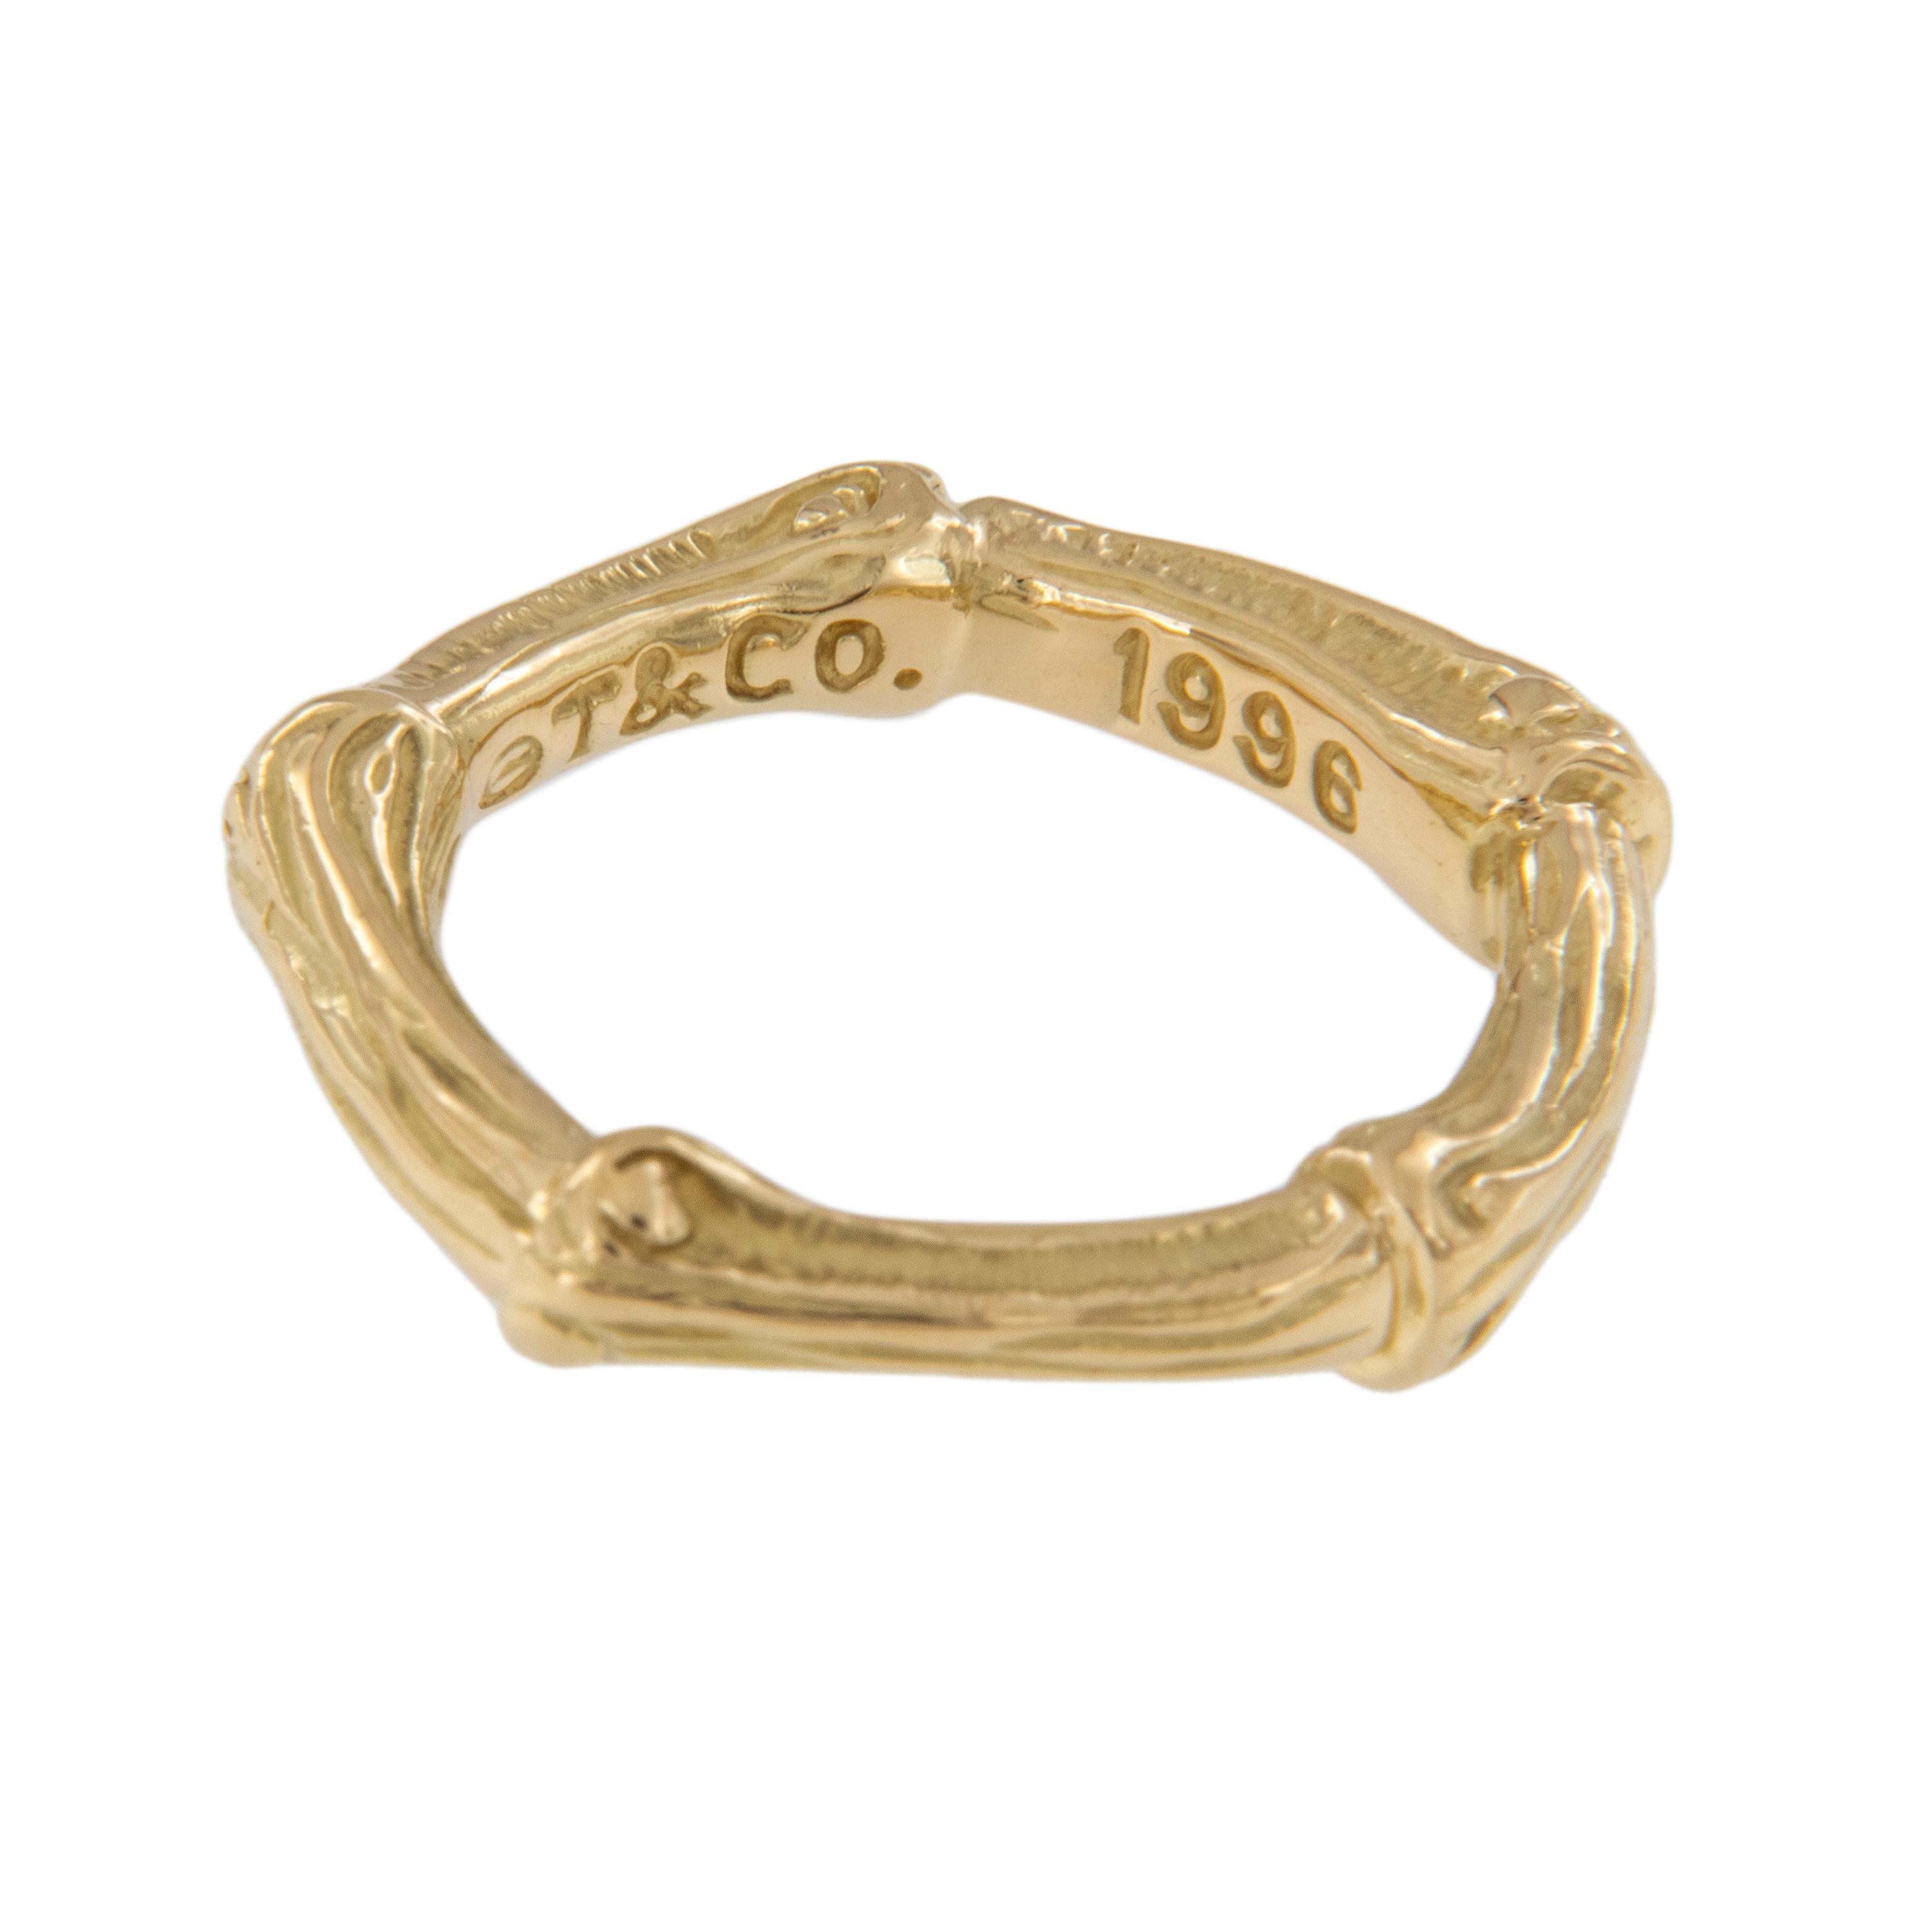 Seltene Bamboo Tiffany & Co 18 Karat Gelbgold Band Ring. Das ikonische und zeitlose Bambusmotiv steht jedem gut. Tragen Sie ein Stück modischer Geschichte. Der Ring hat die Größe 5,25. Gestempelt T & Co, 1996. 3 
 DIE RINGE SIND EINZELN